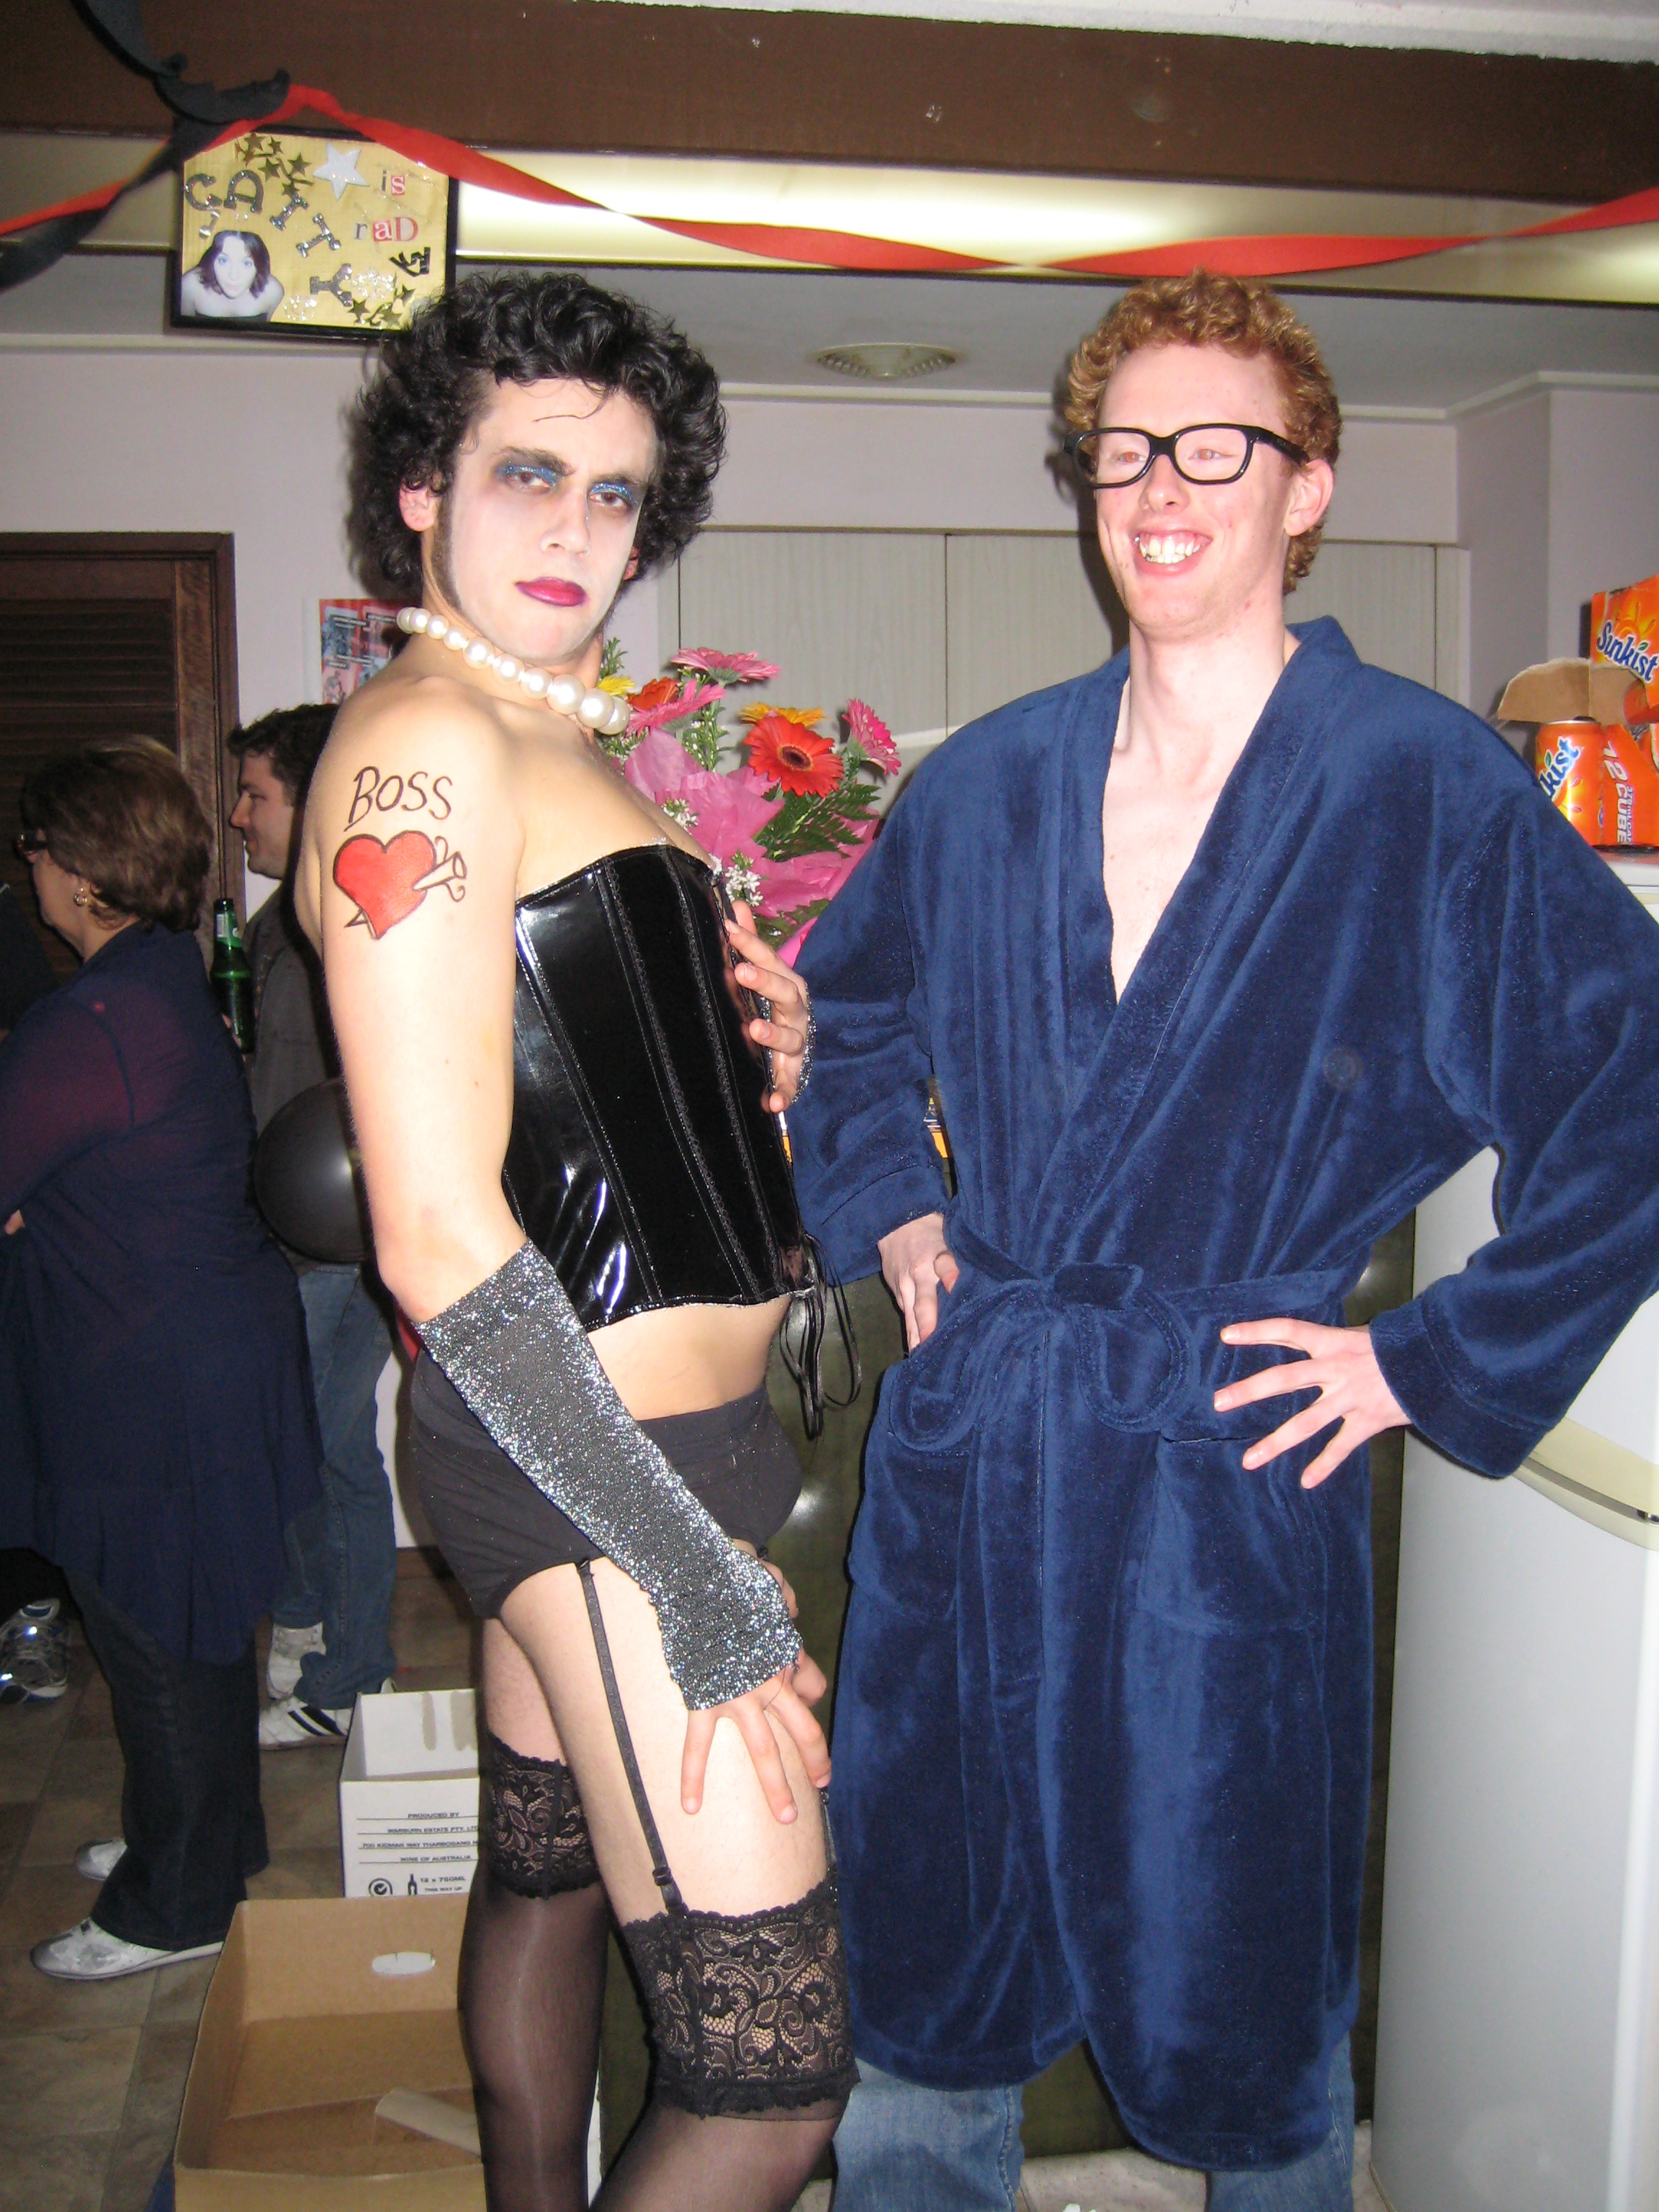 File Frankenfurter Costume Lookalike Rocky Horror Jpg Wikimedia